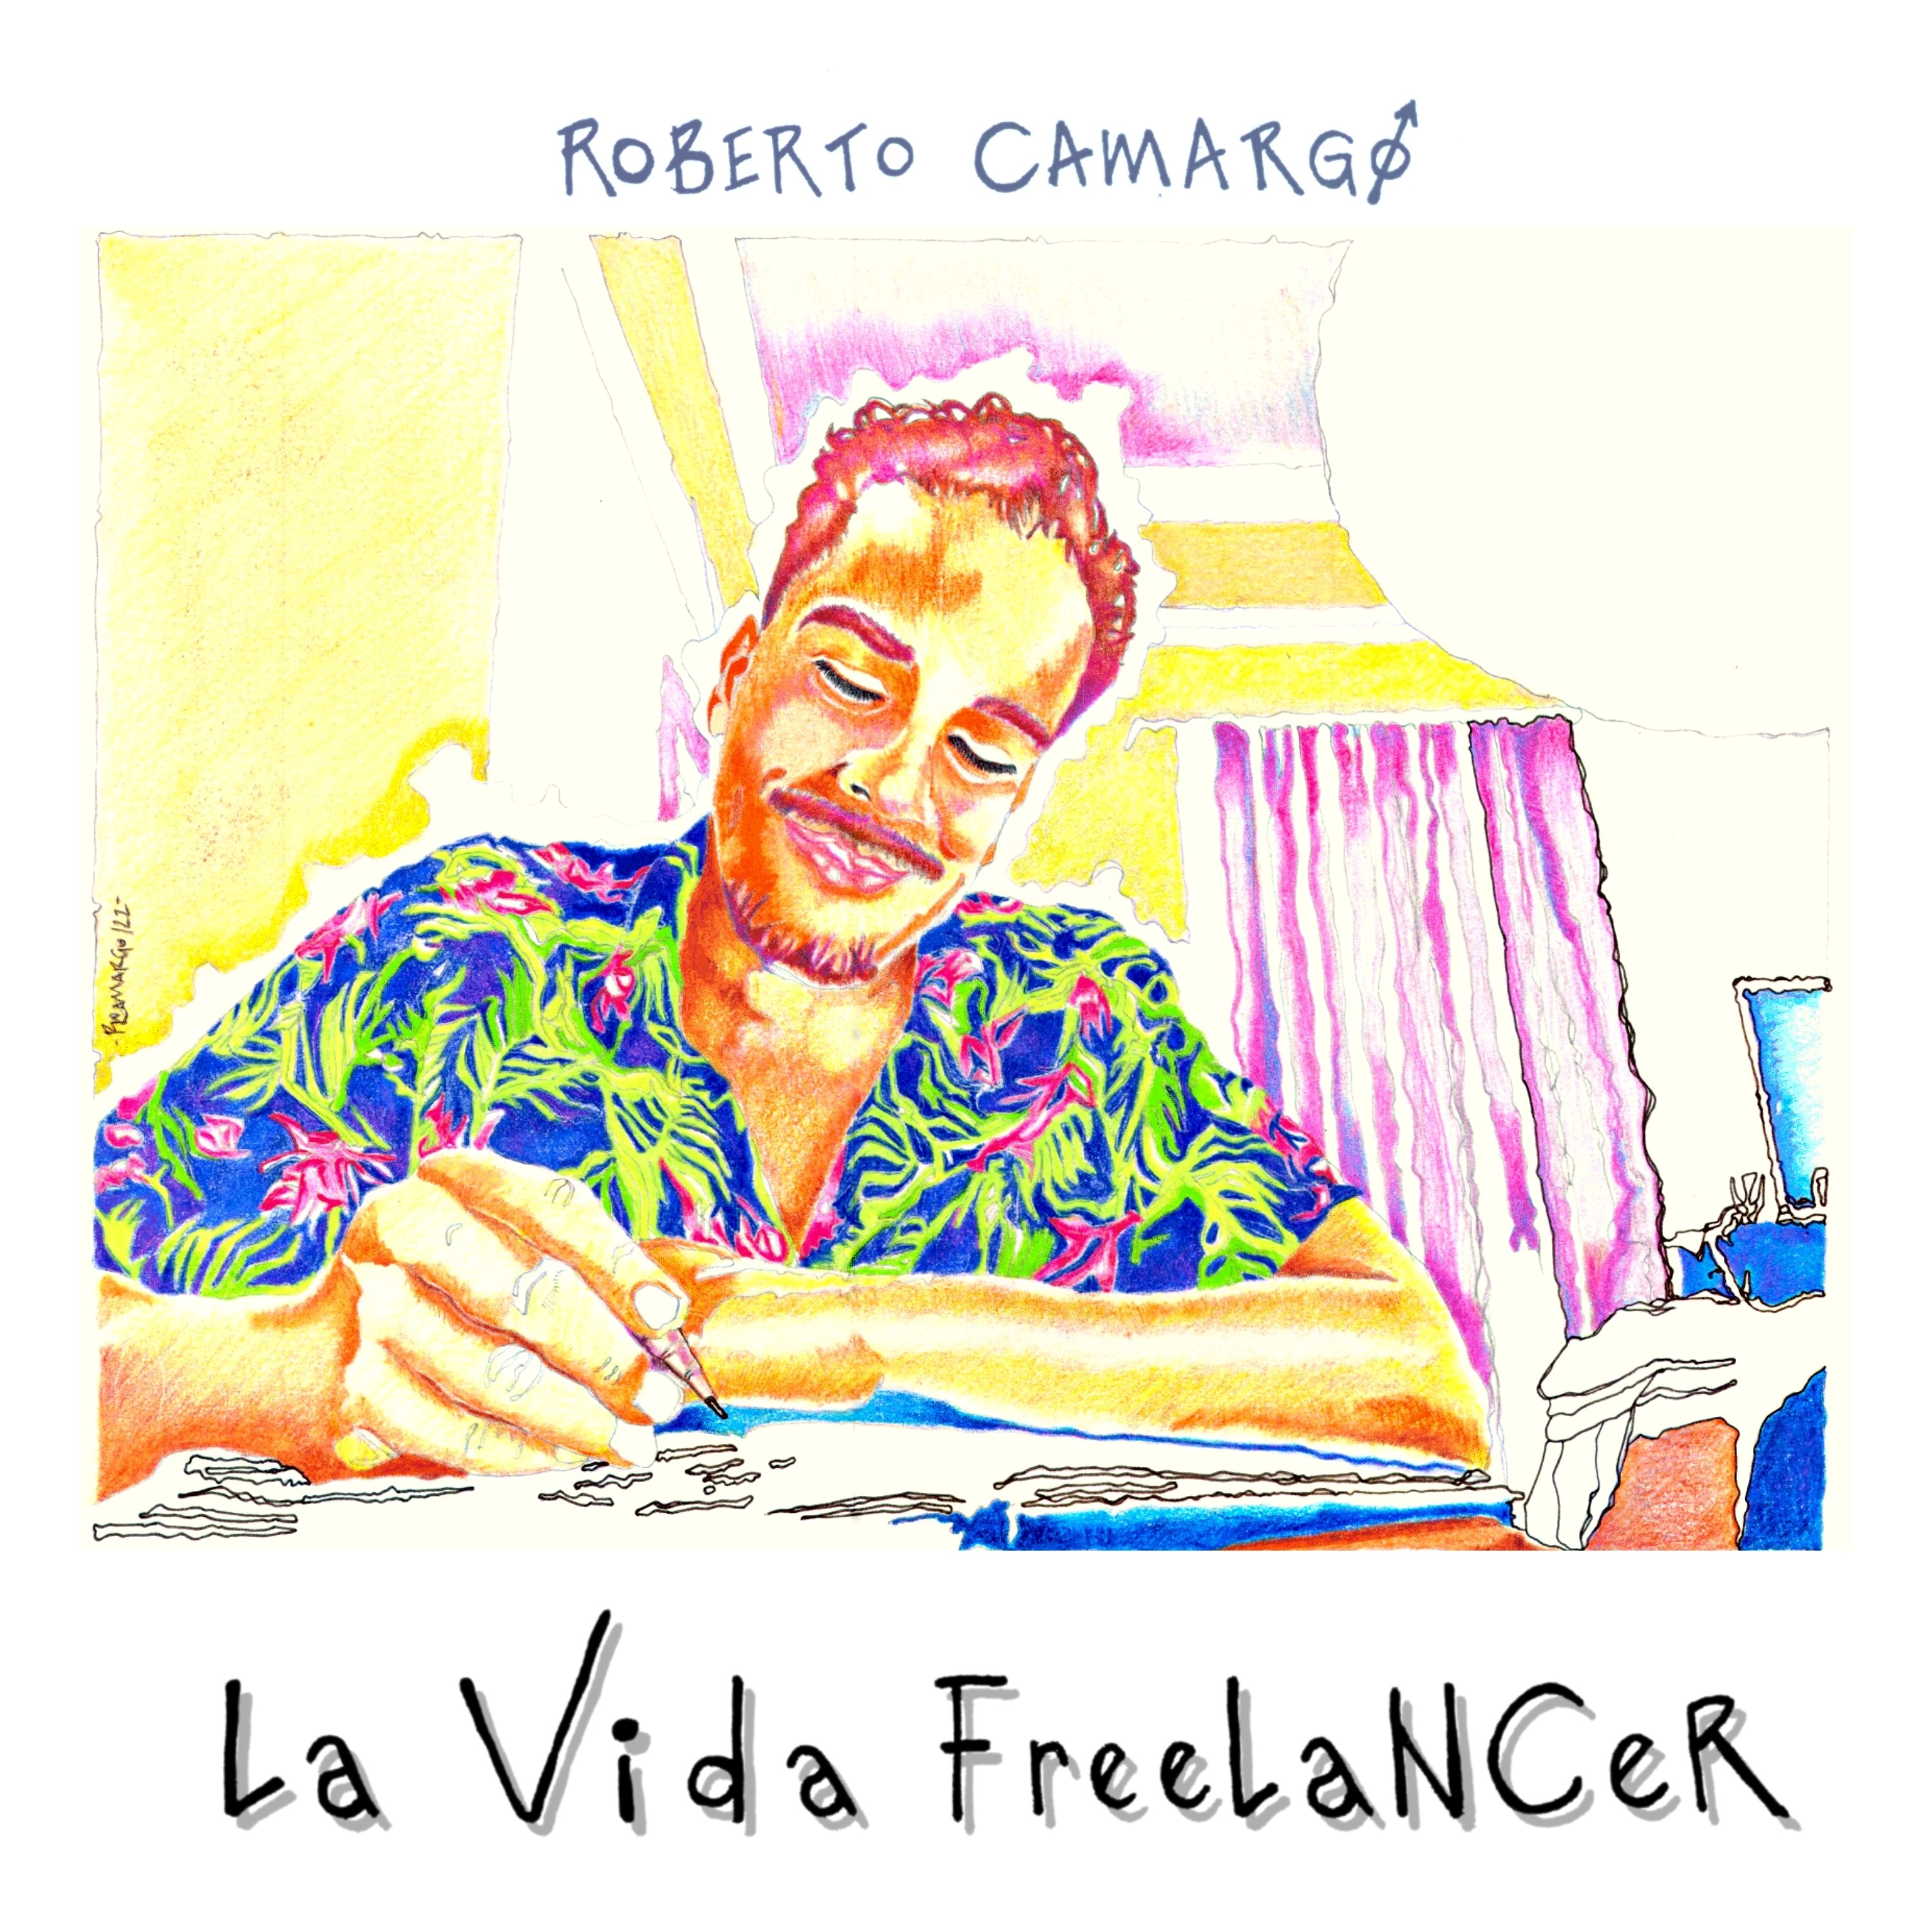 El artista Roberto Camargo hace el lanzamiento de ´´La Vida Freelancer´´ – @Roberto_Camargo